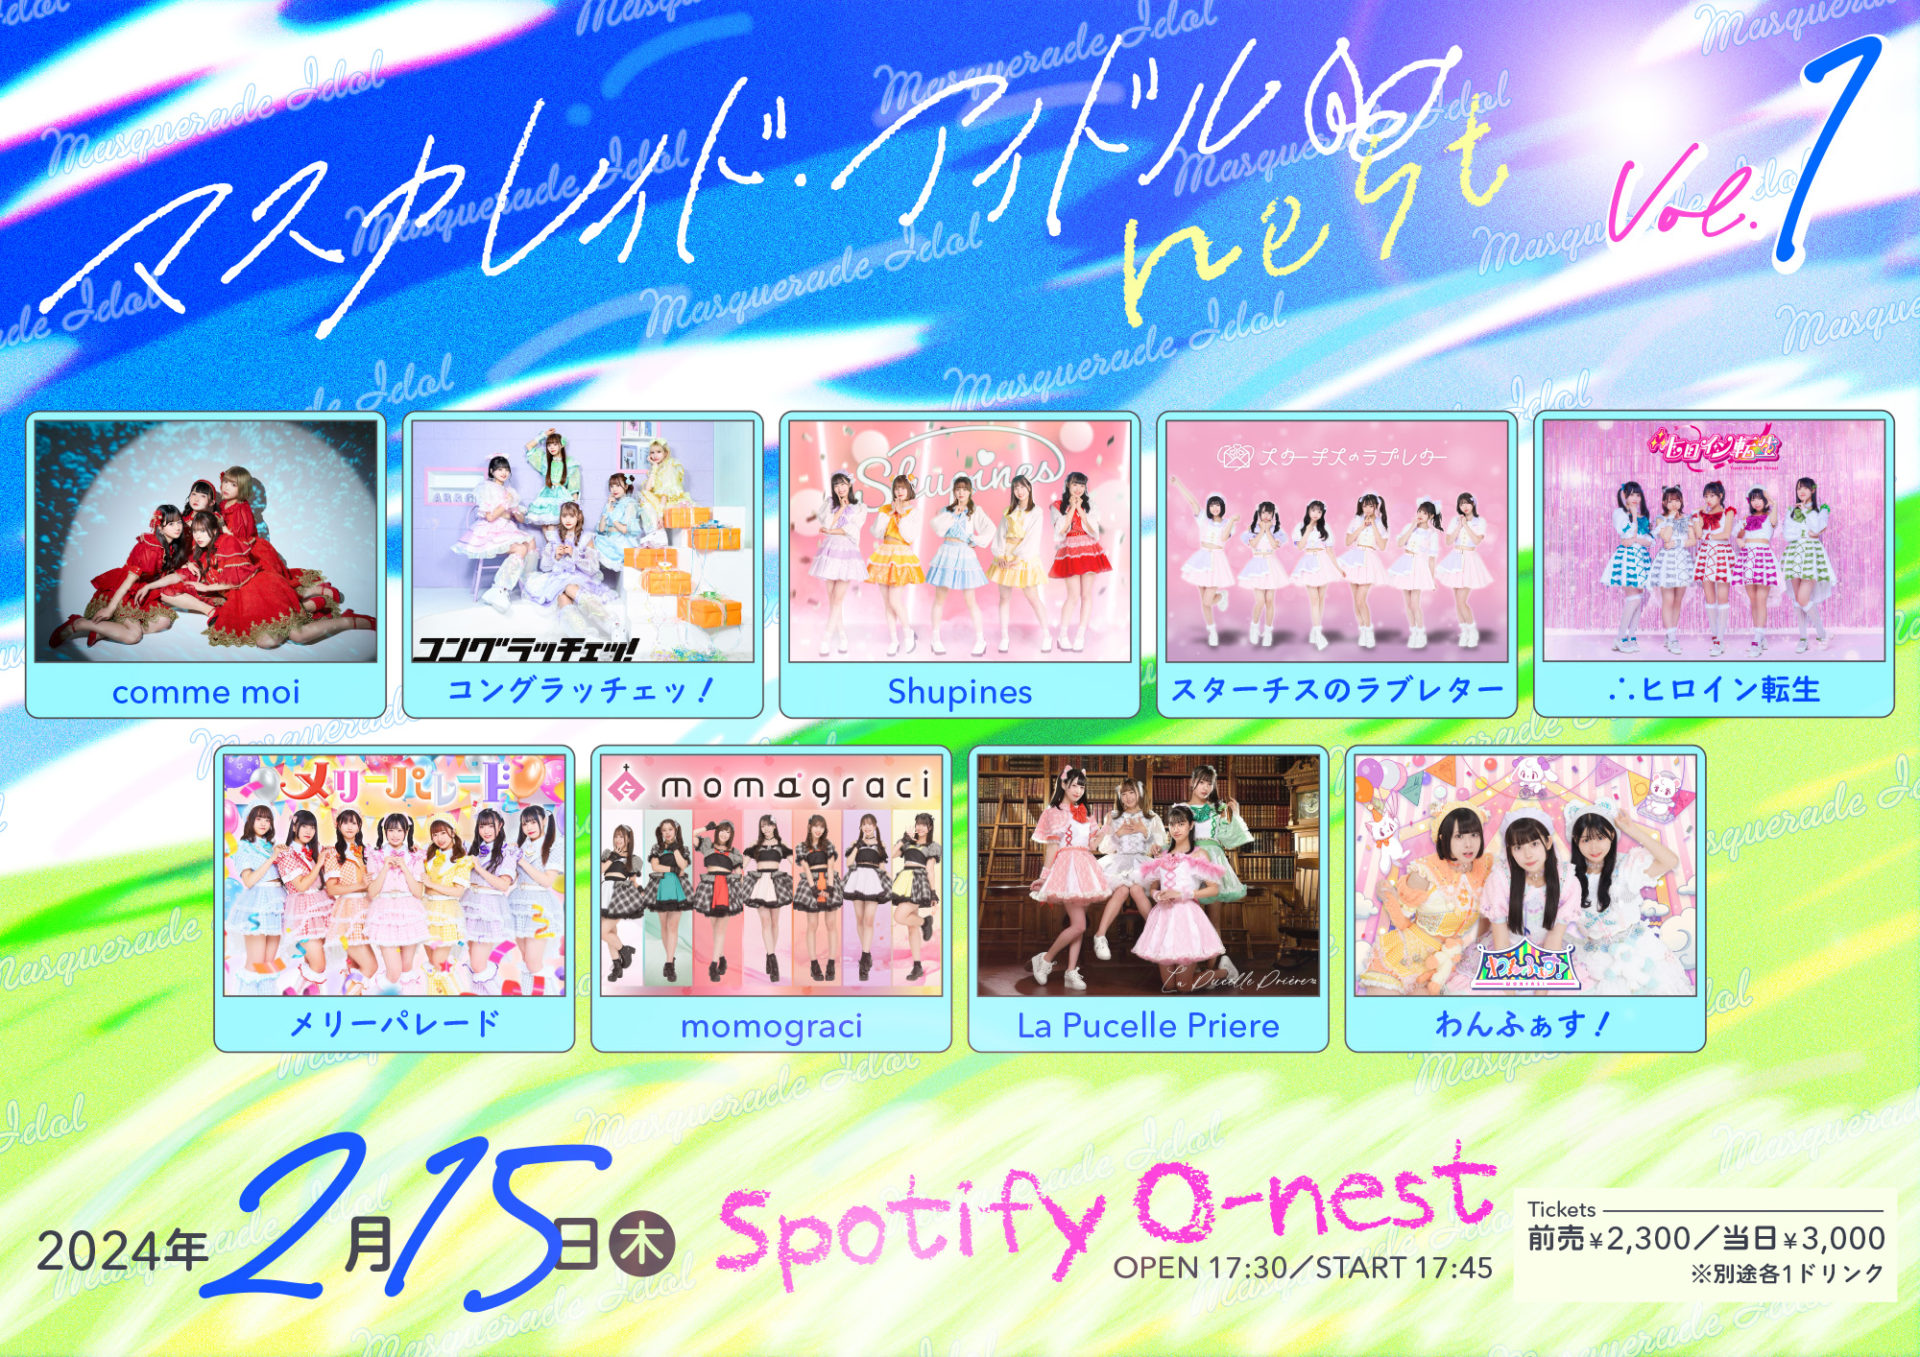 マスカレイド・アイドルnest vol.1 | Spotify O-EAST・O-WEST・O-Crest 